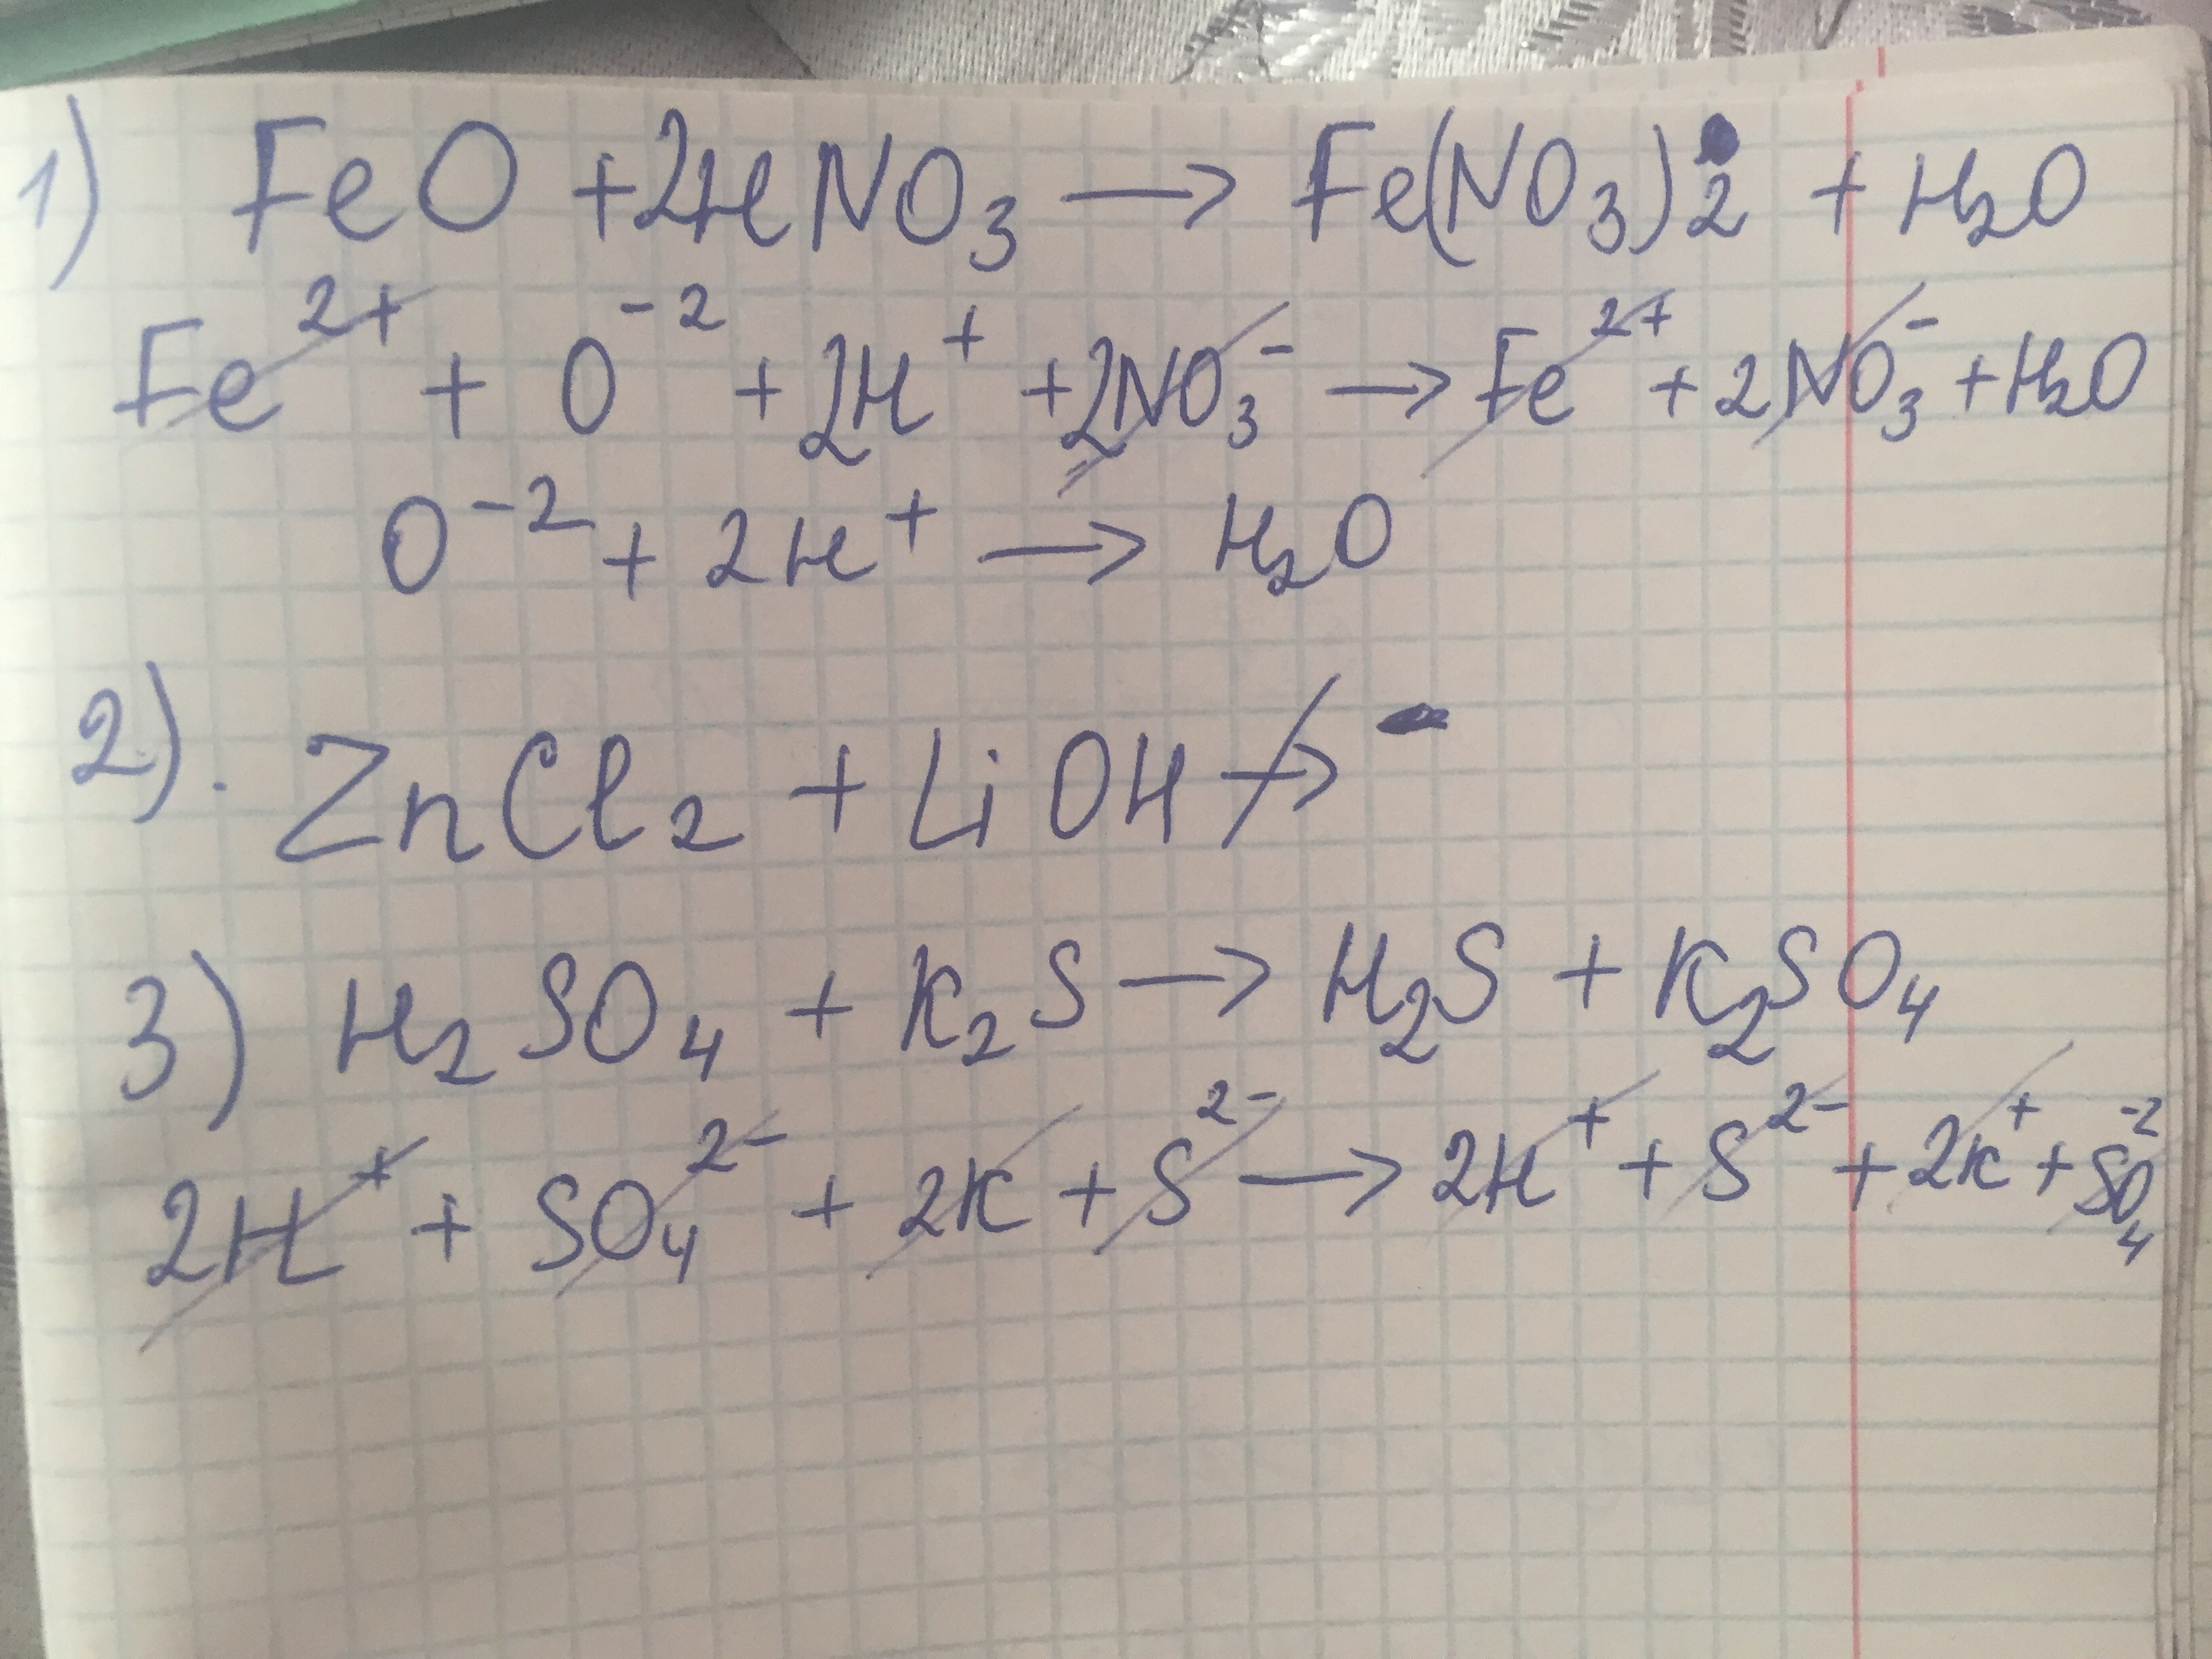 Koh hno3 какая реакция. H2so4 LIOH ионное. LIOH h2so4 уравнение. Feo+hno3 уравнение реакции. LIOH h2so4 ионное уравнение полное.